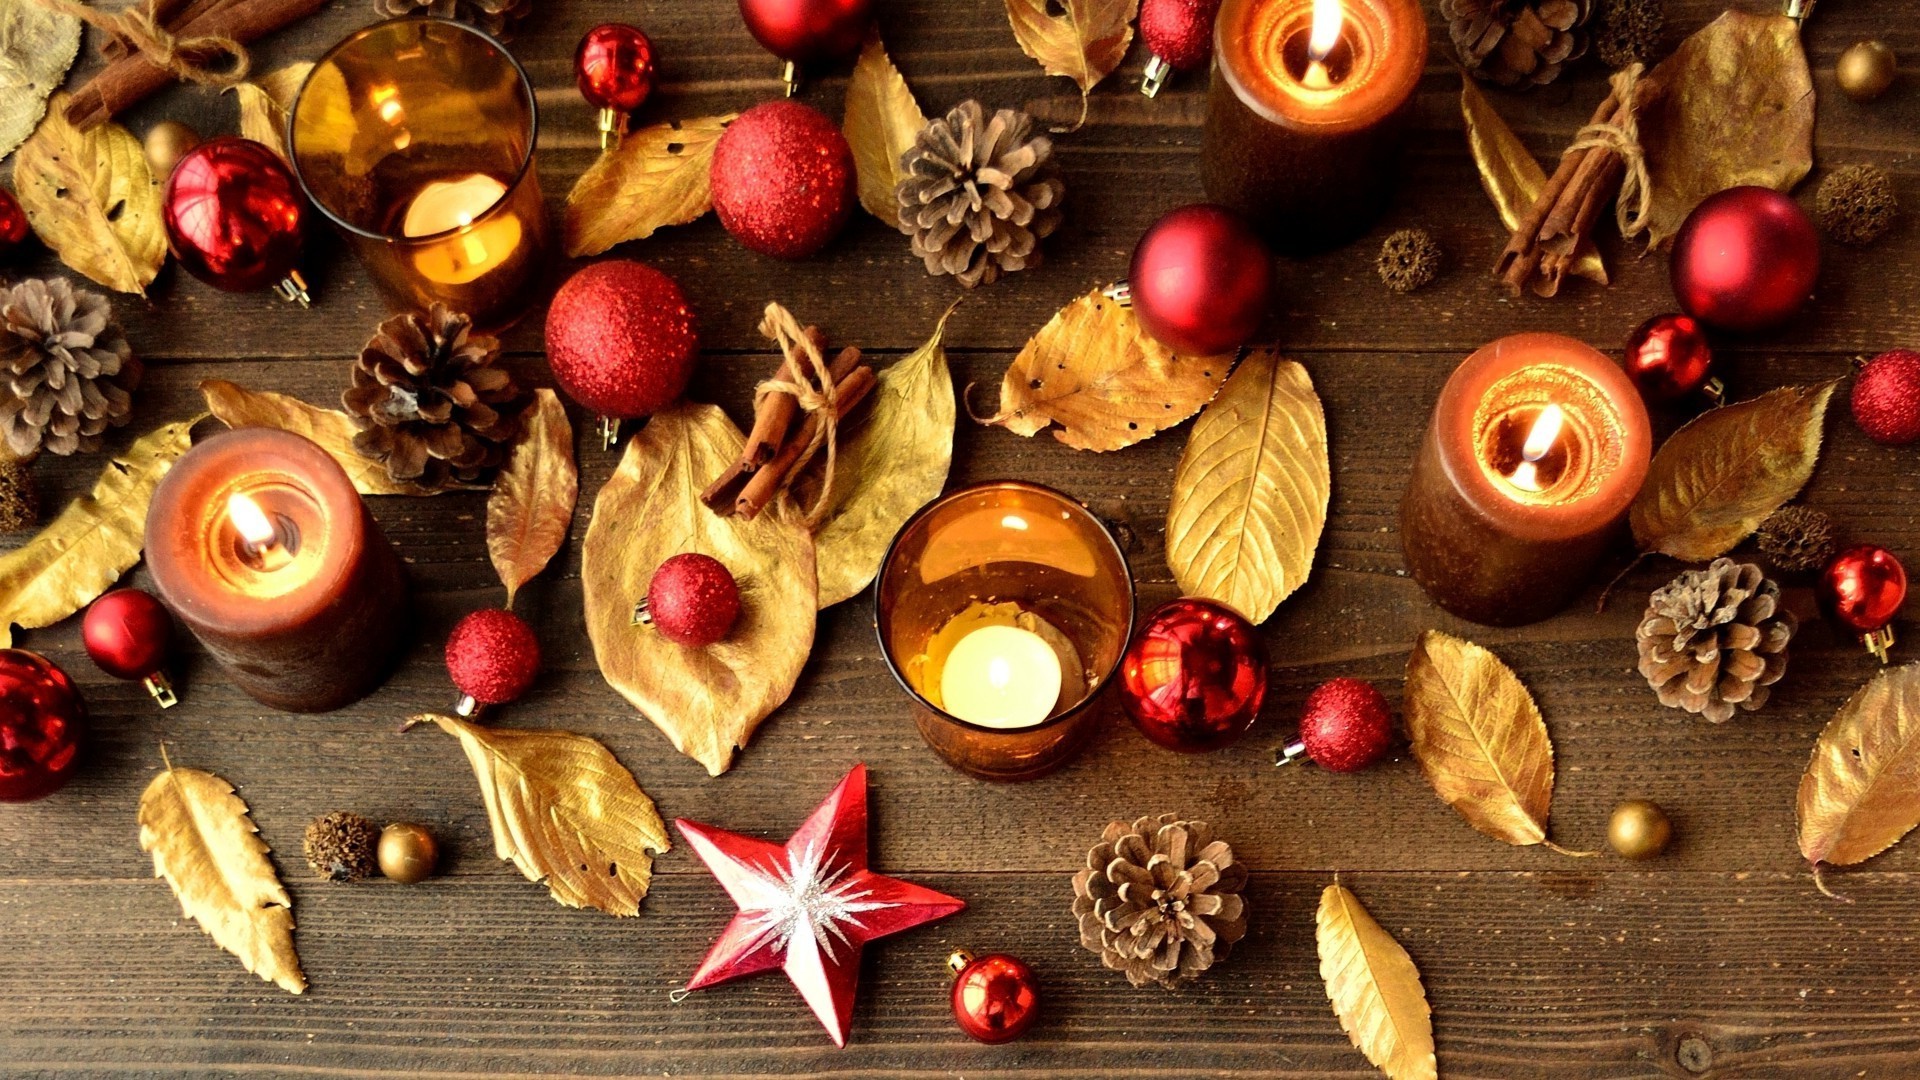 новый год рождество украшения зима корица рабочего стола появлением праздник сезон свеча золото традиционные конусная древесины